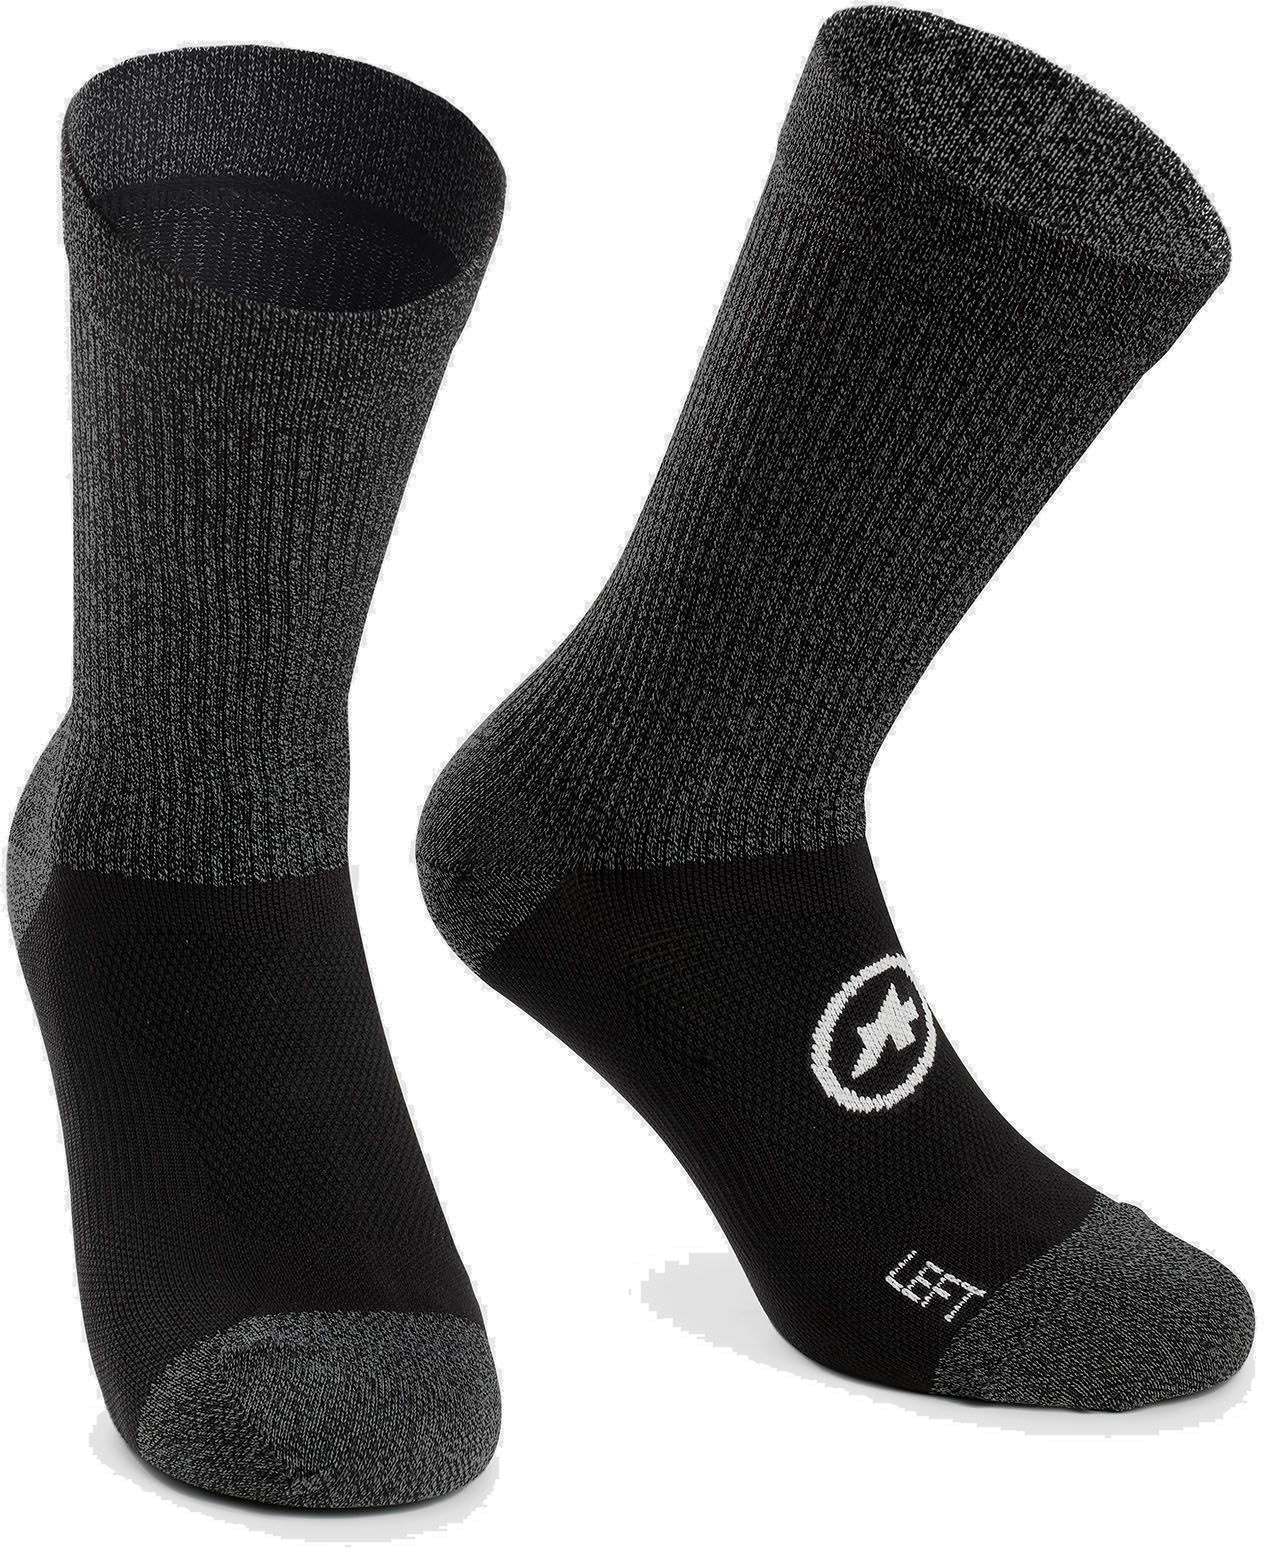 Beklædning - Sokker - Assos TRAIL Socks EVO - Sort